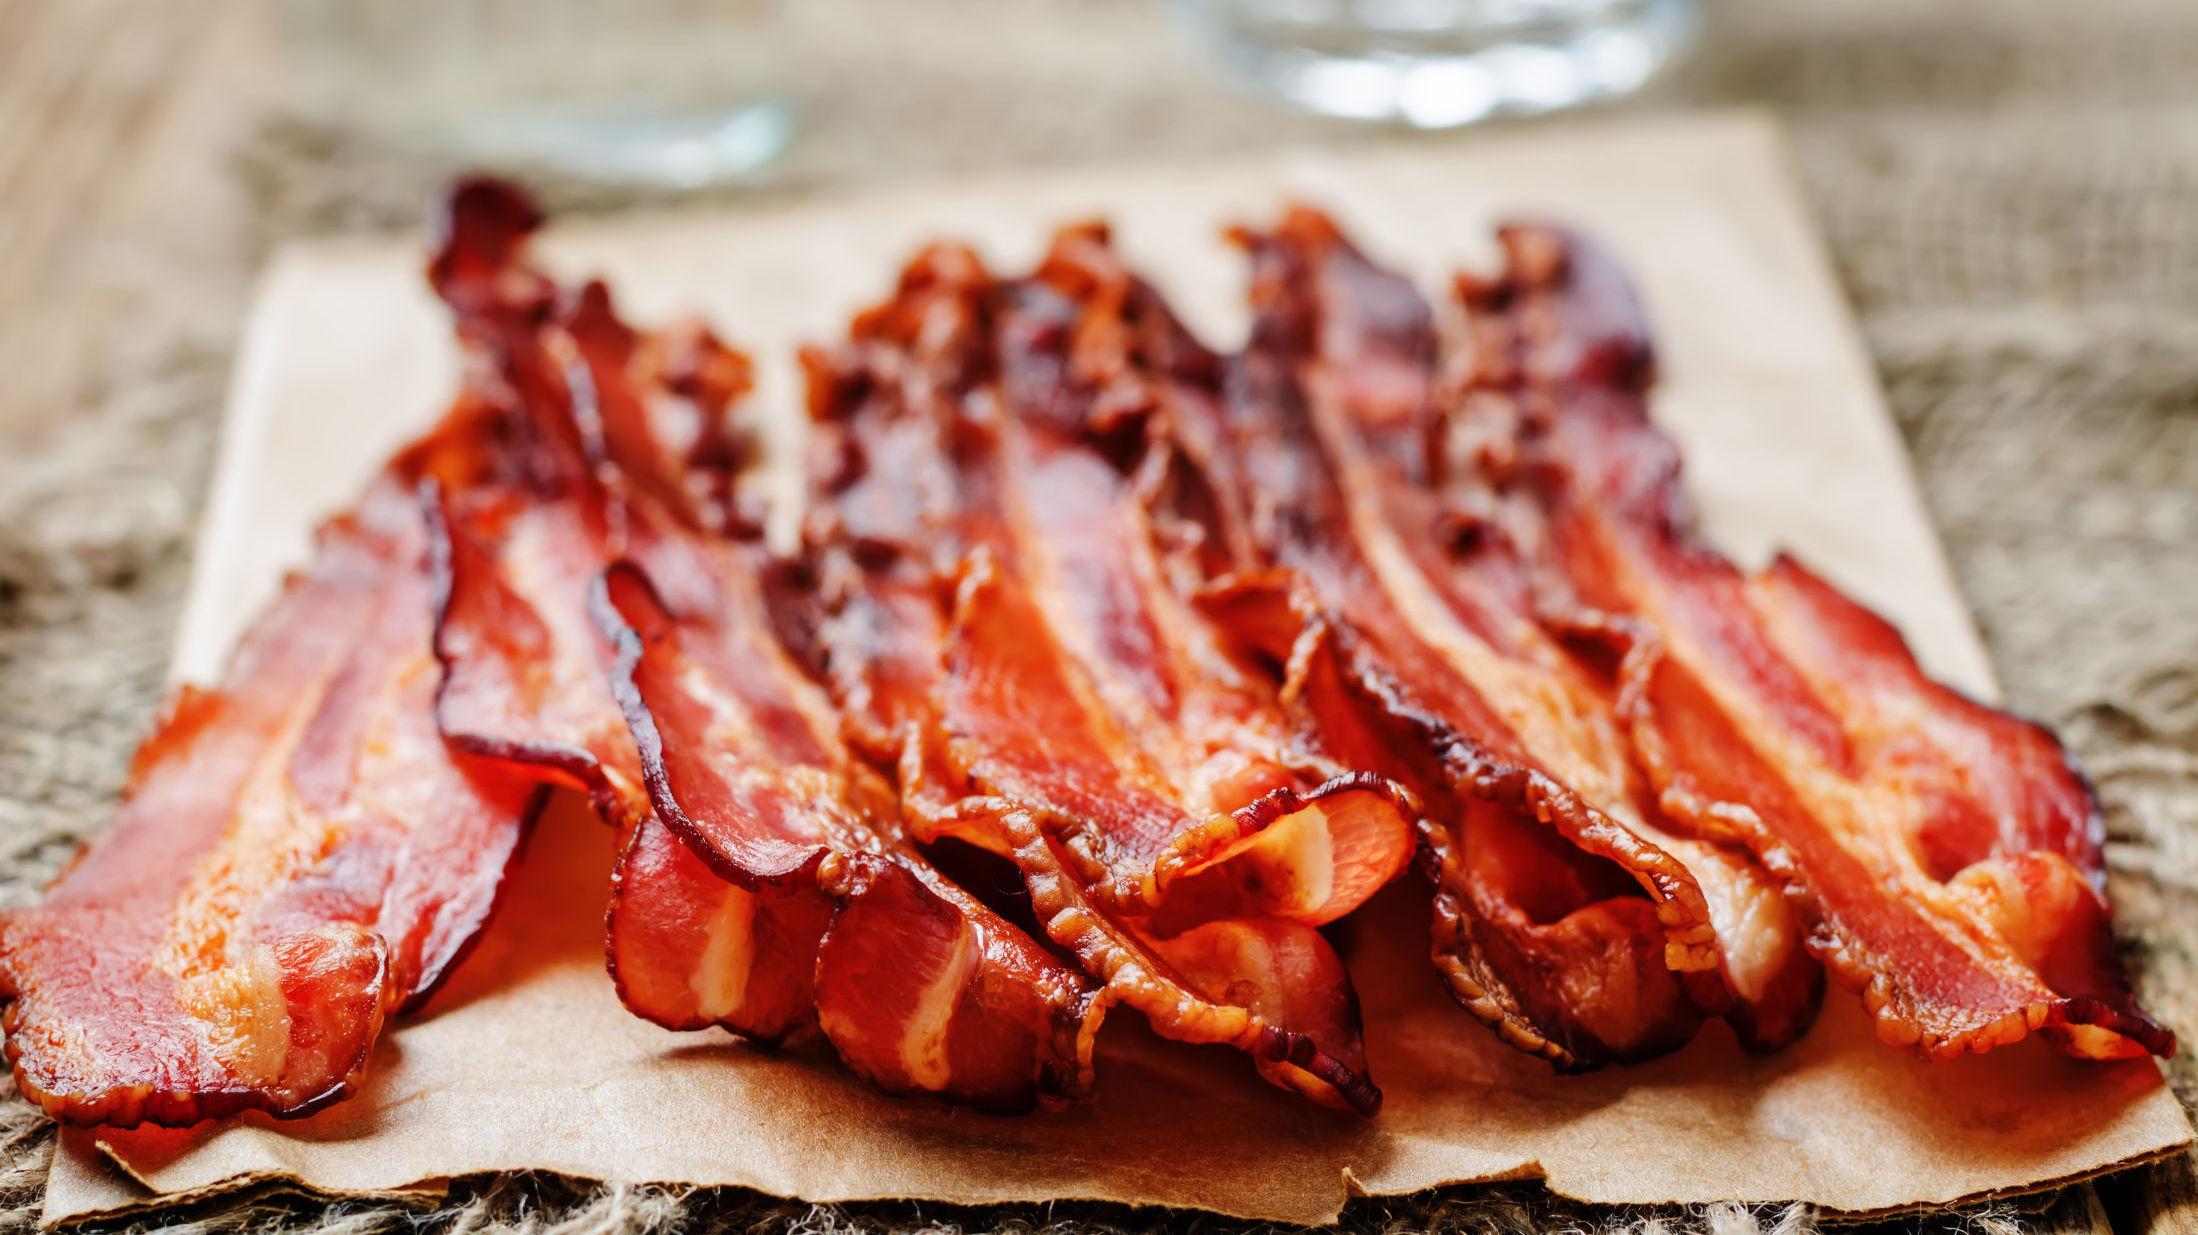 NAM: Aldri feil med litt sprøstekt bacon. Det synes sannsynligvis ikke verdensrekordholderen i bacon-spising heller, som spiste 182 skiver på fem minutter. Foto: Shutterstock